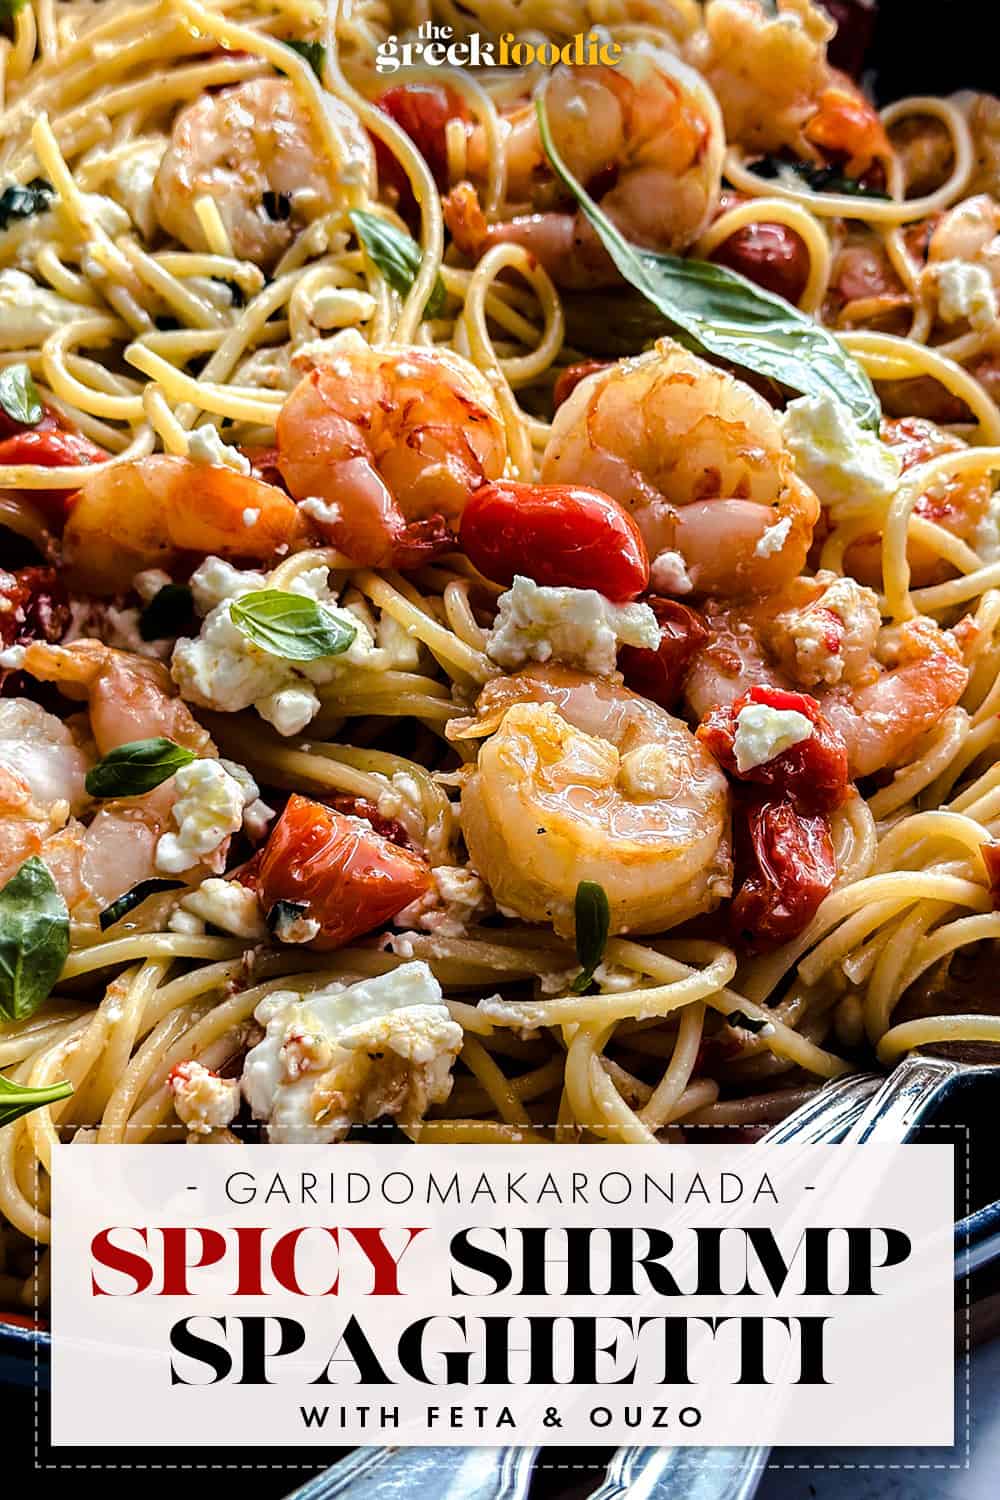 Shrimp Spaghetti-Garidomakaronada